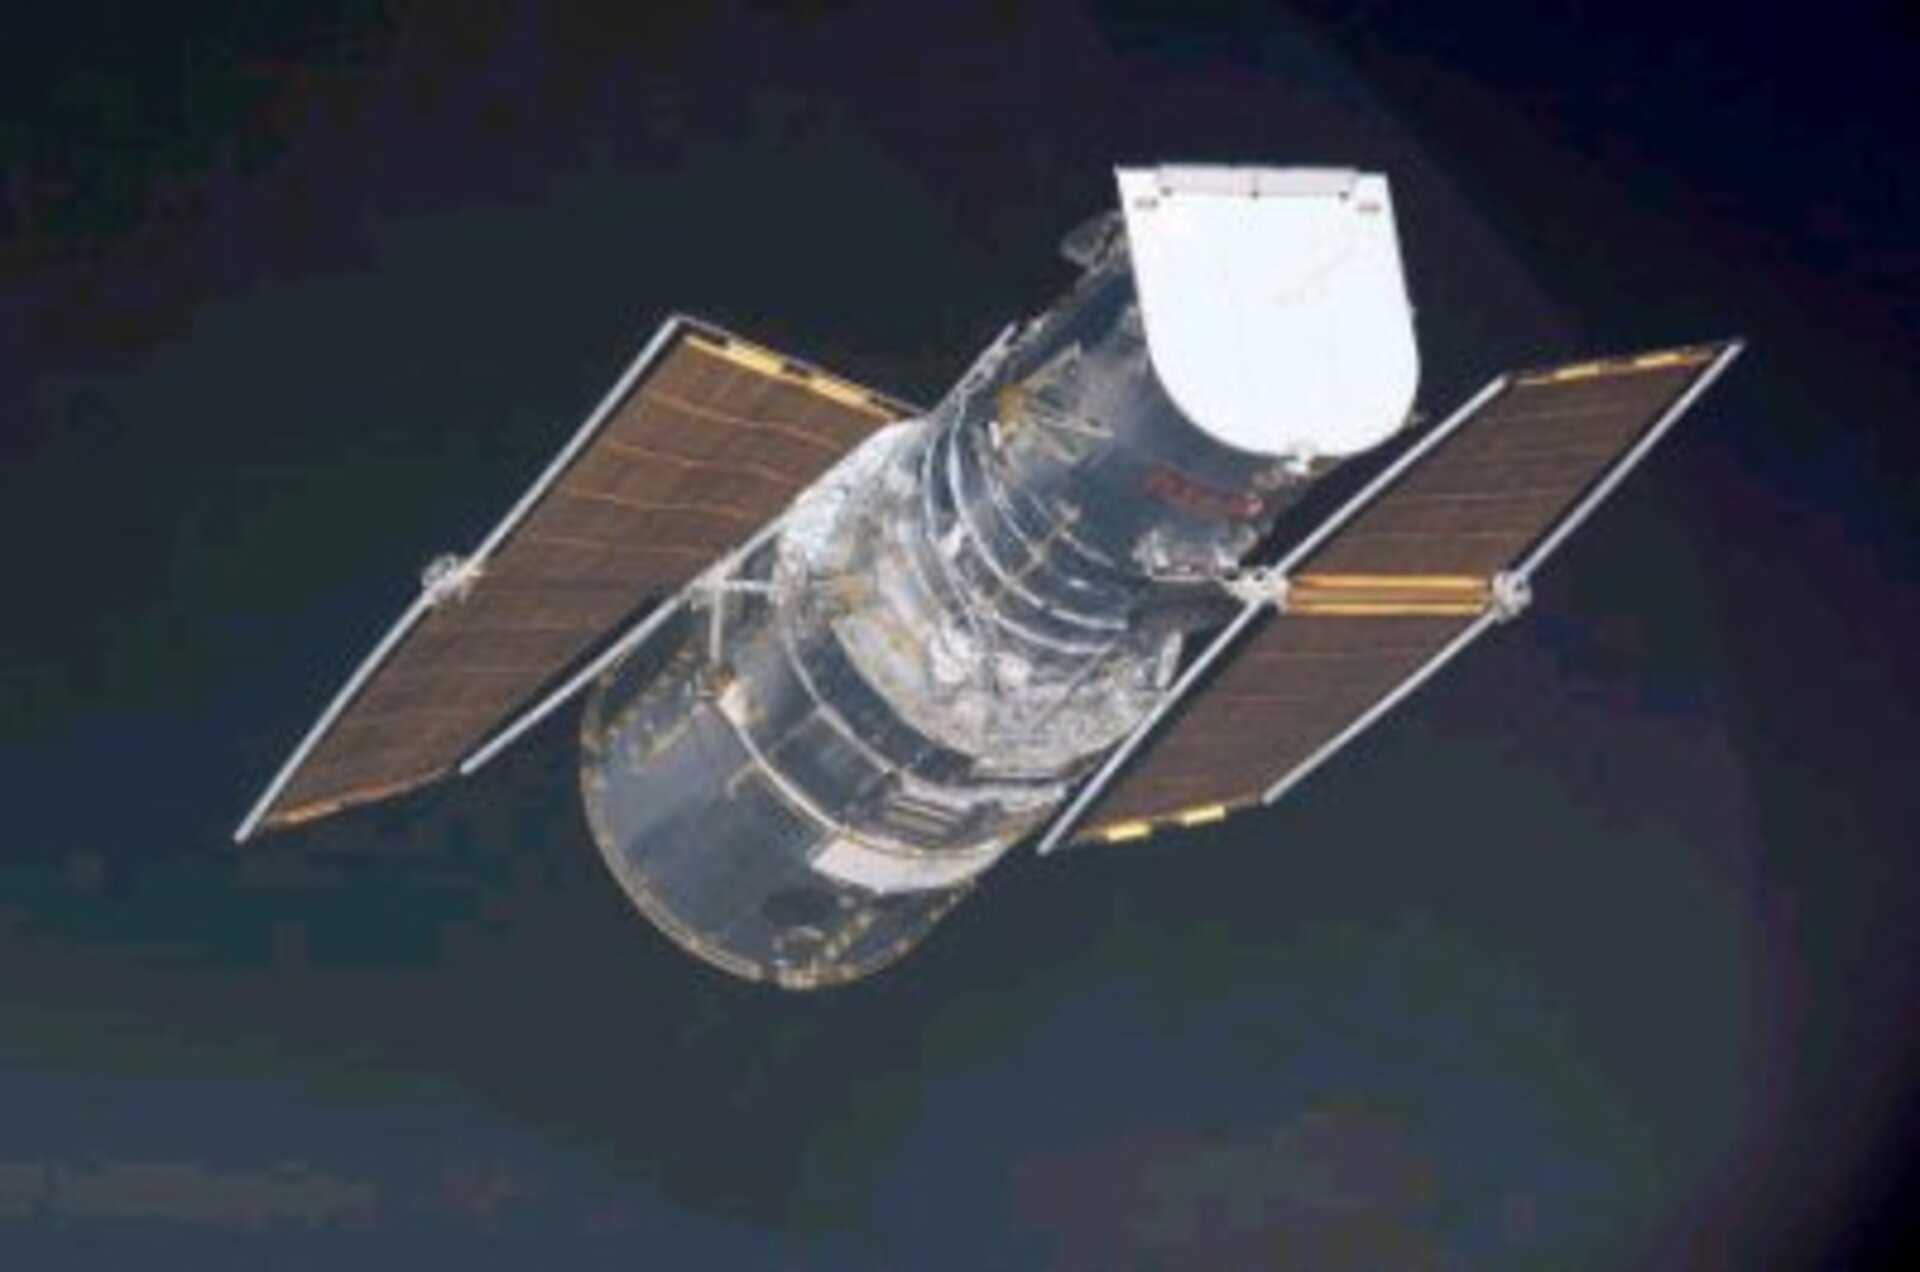 Avaruusteleskooppi  Hubble ja sen vanhat aurinkopaneelit.